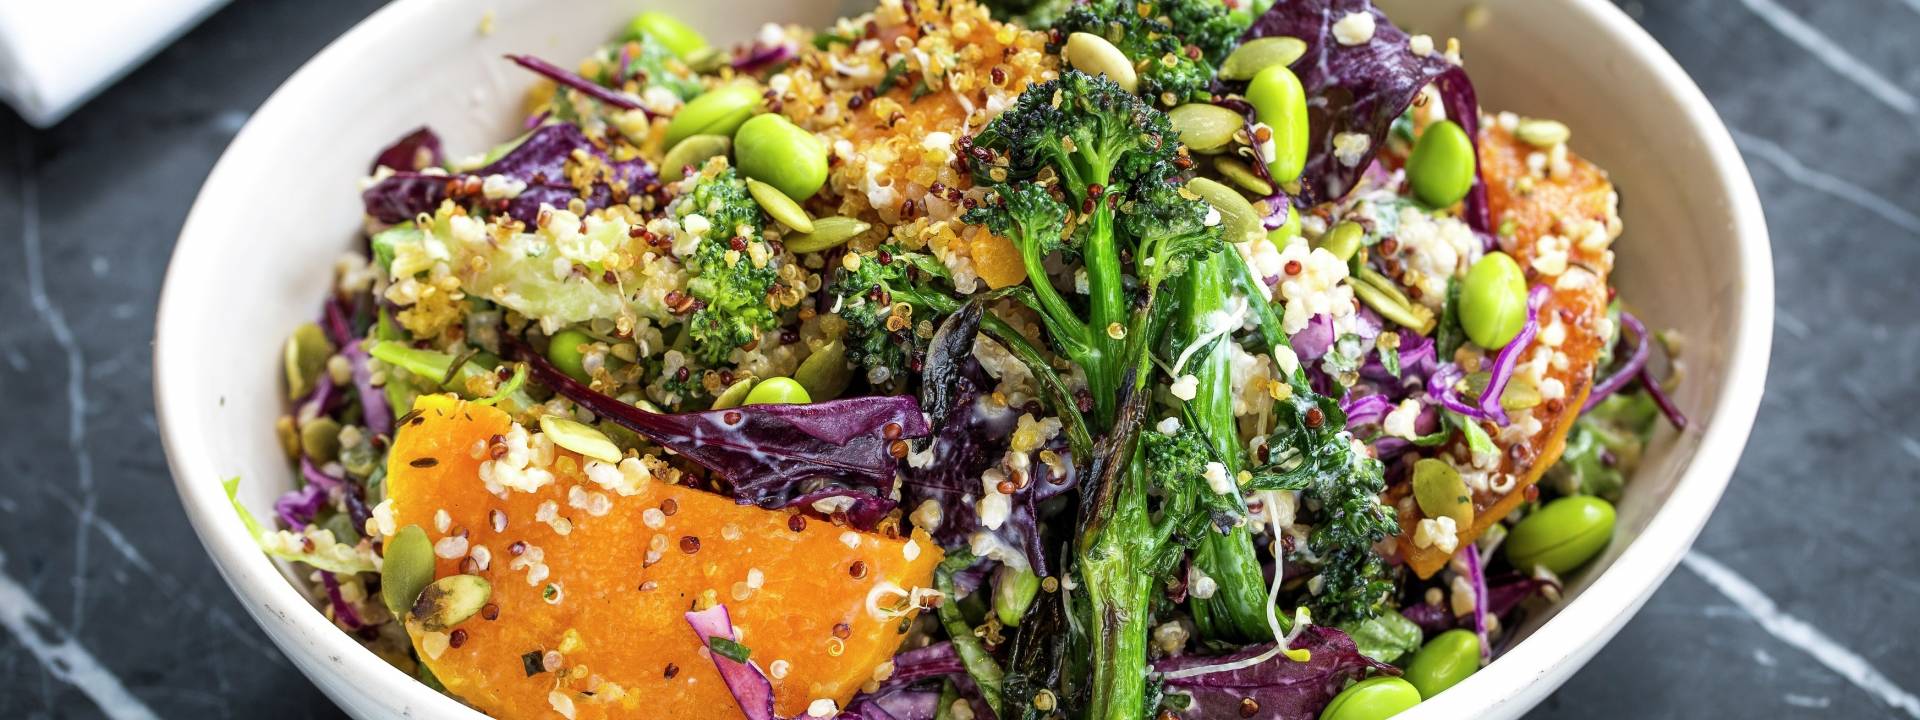 grg superfood salad header